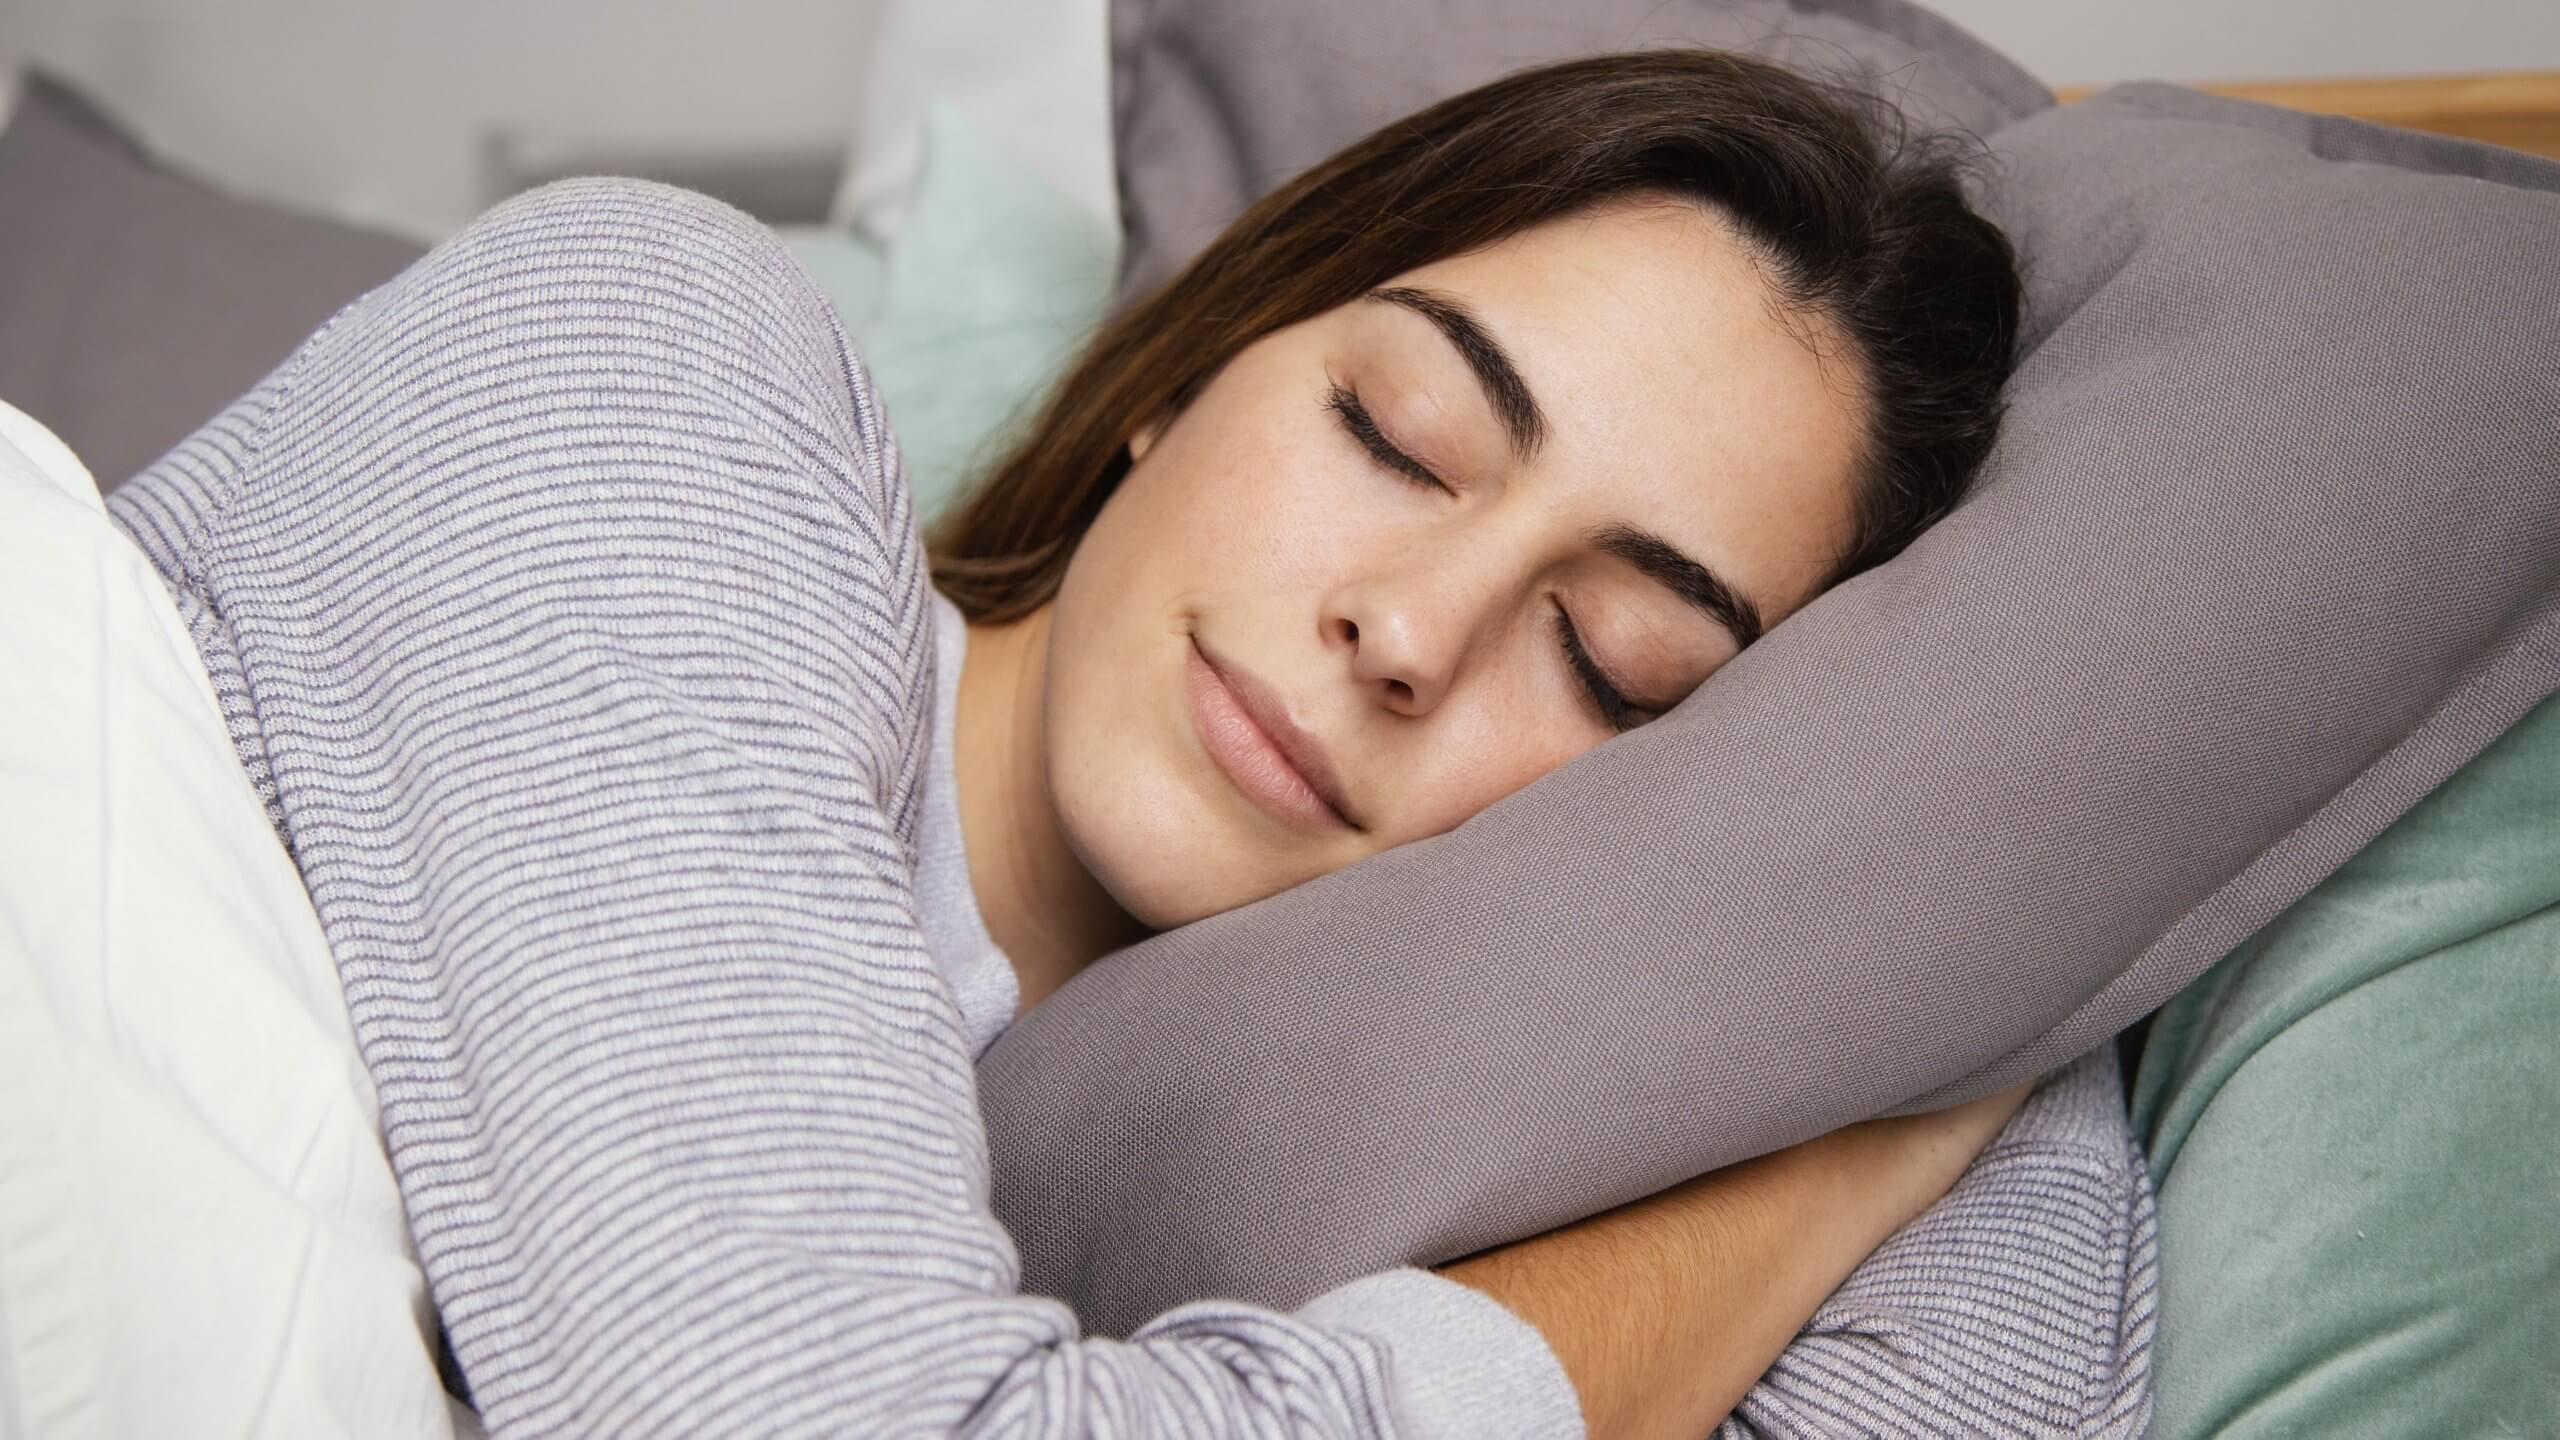 ¿Por qué es importante dormir?